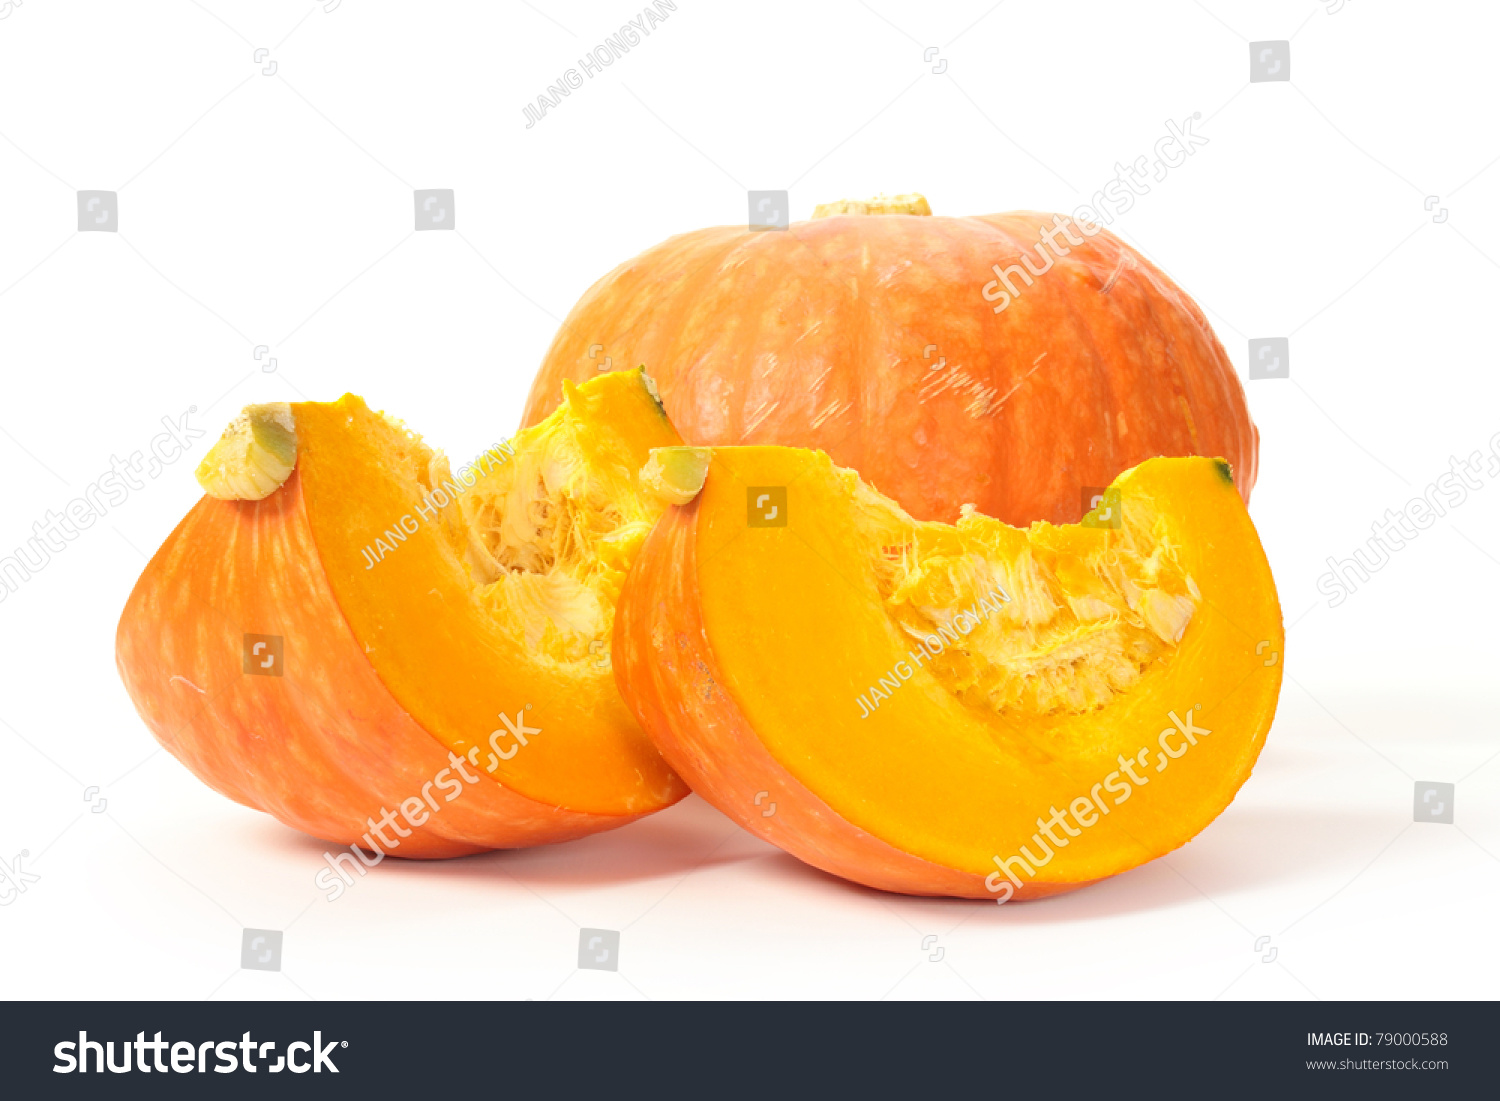  Orange pumpkin on white background #79000588